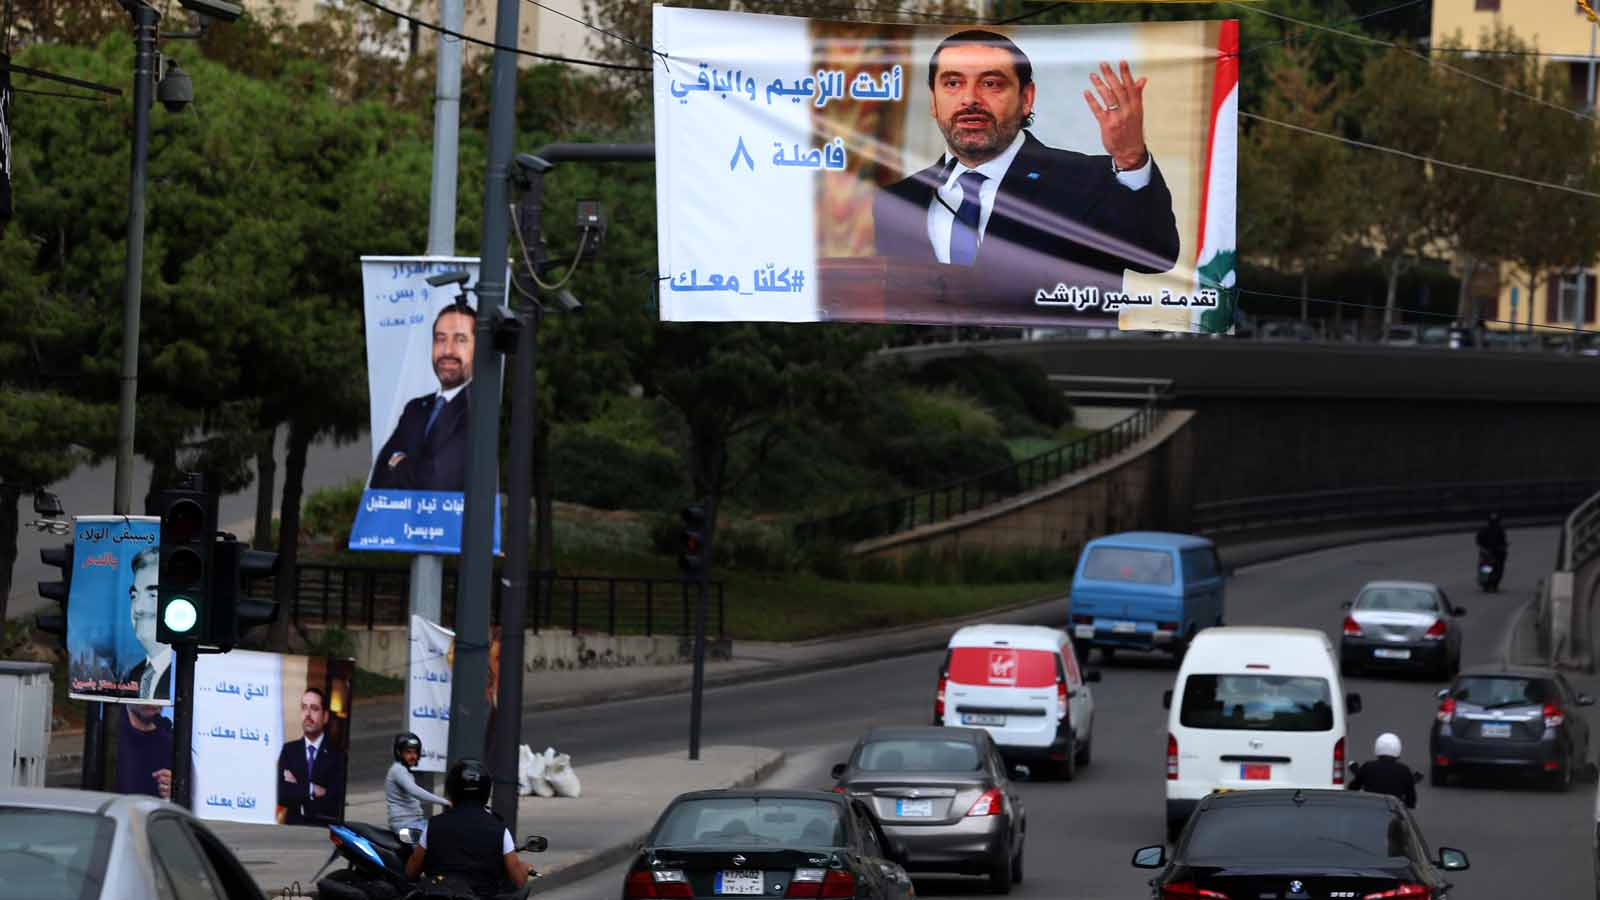 يافطات تاييد للرئيس سعد الحريري في شوارع بيروت (علي علوش)